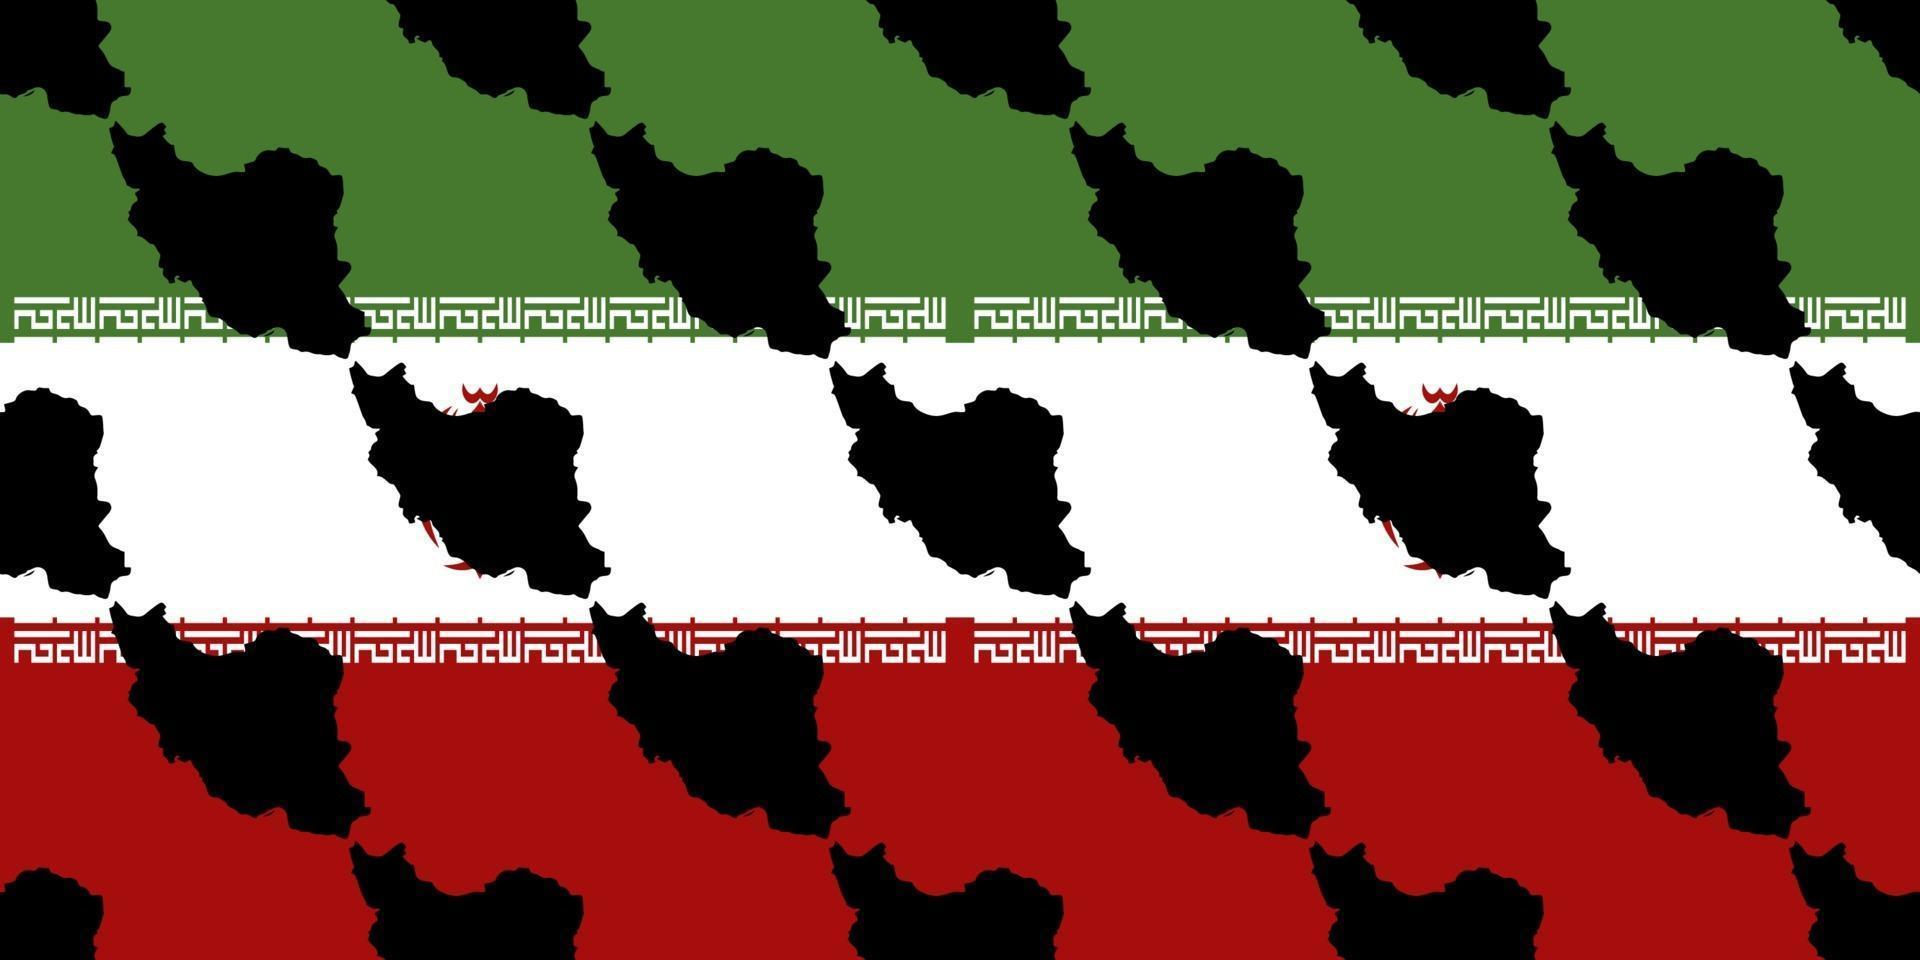 naadloze patroon van iran kaart silhouet geïsoleerd op iran vlag achtergrond. pakken voor decoratief papier, verpakkingen, omslagen, cadeaupapier en huisinrichting. vector illustratie eps10.